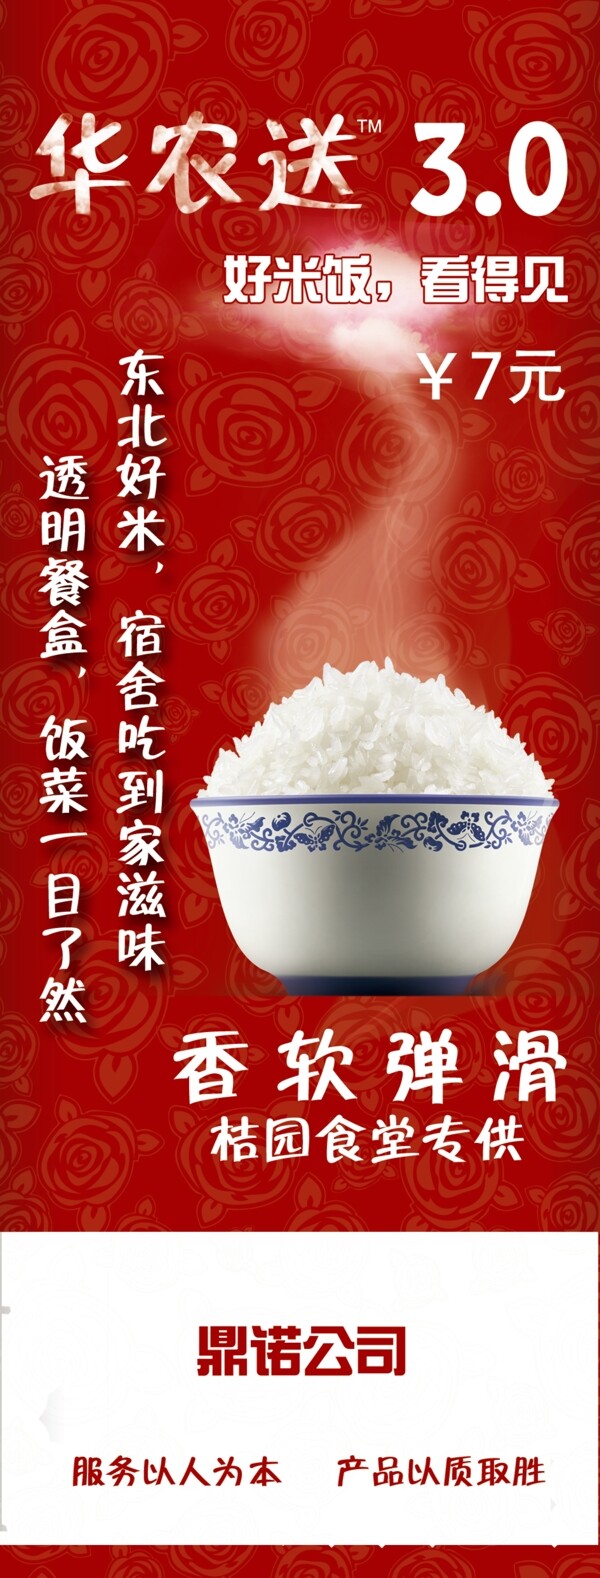 红色好米快餐广告宣传展架